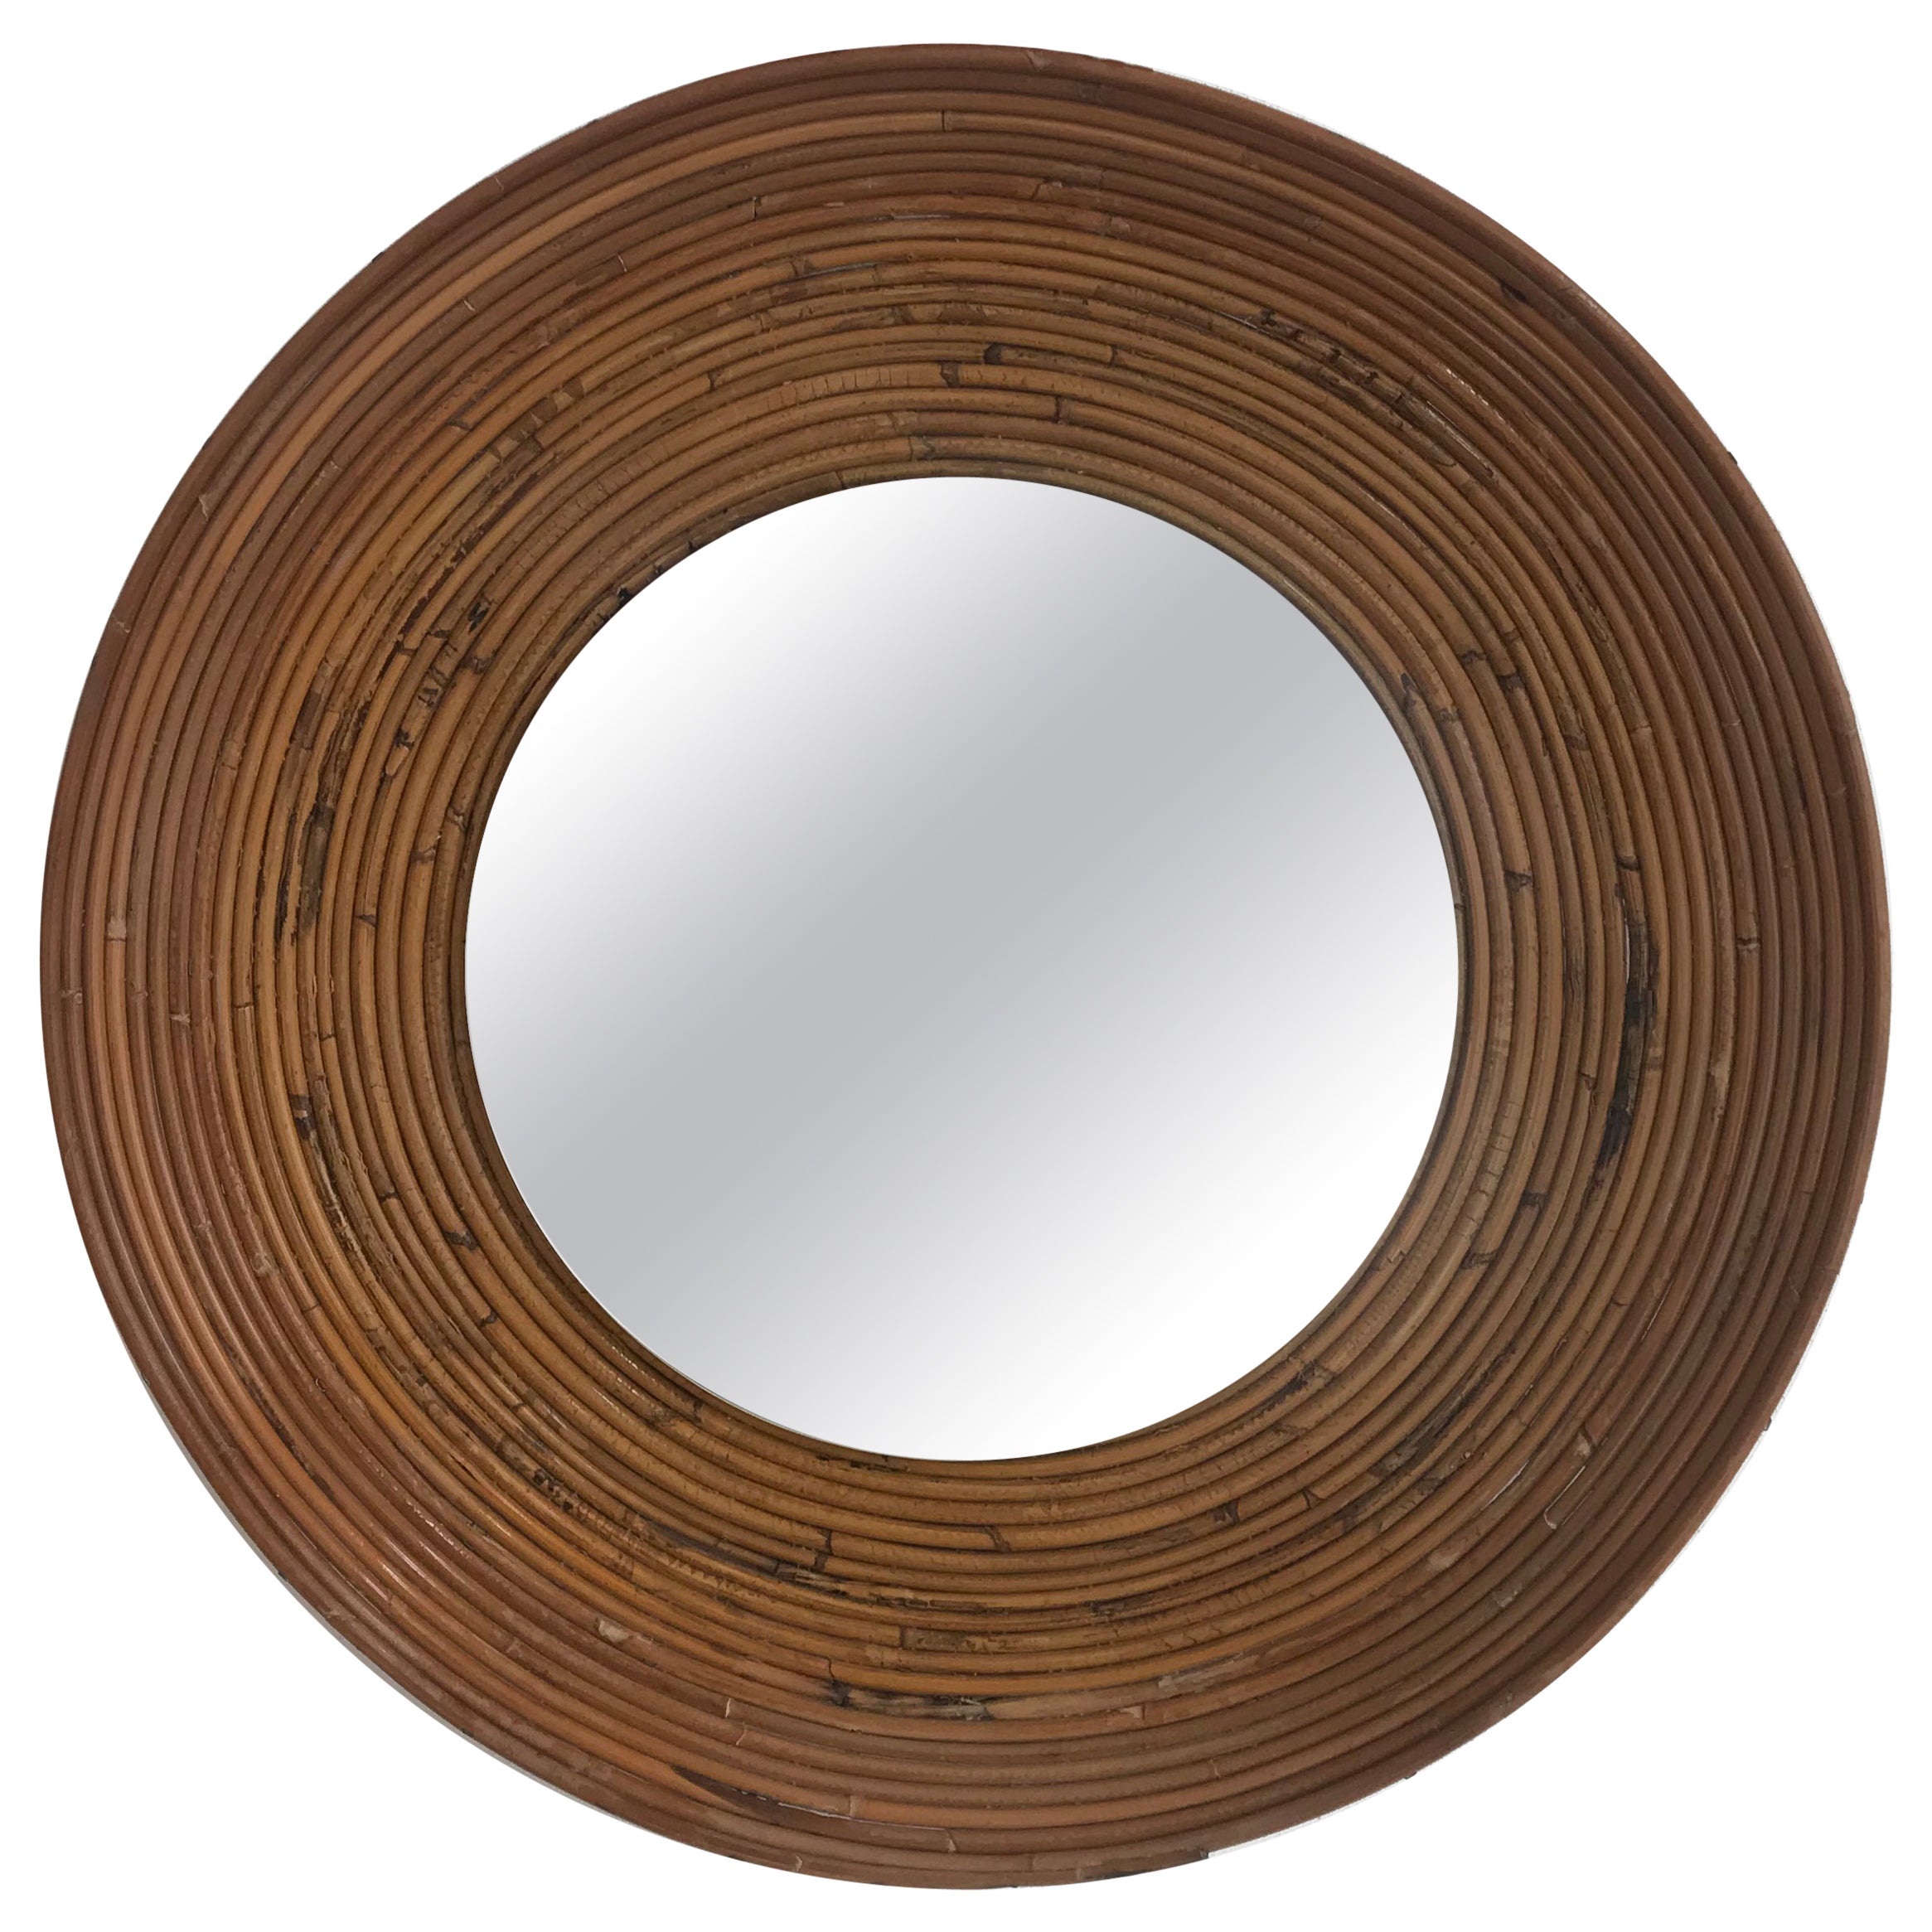 Italian Mid-Century Round Rattan Bamboo Wall Mirror, 1960s